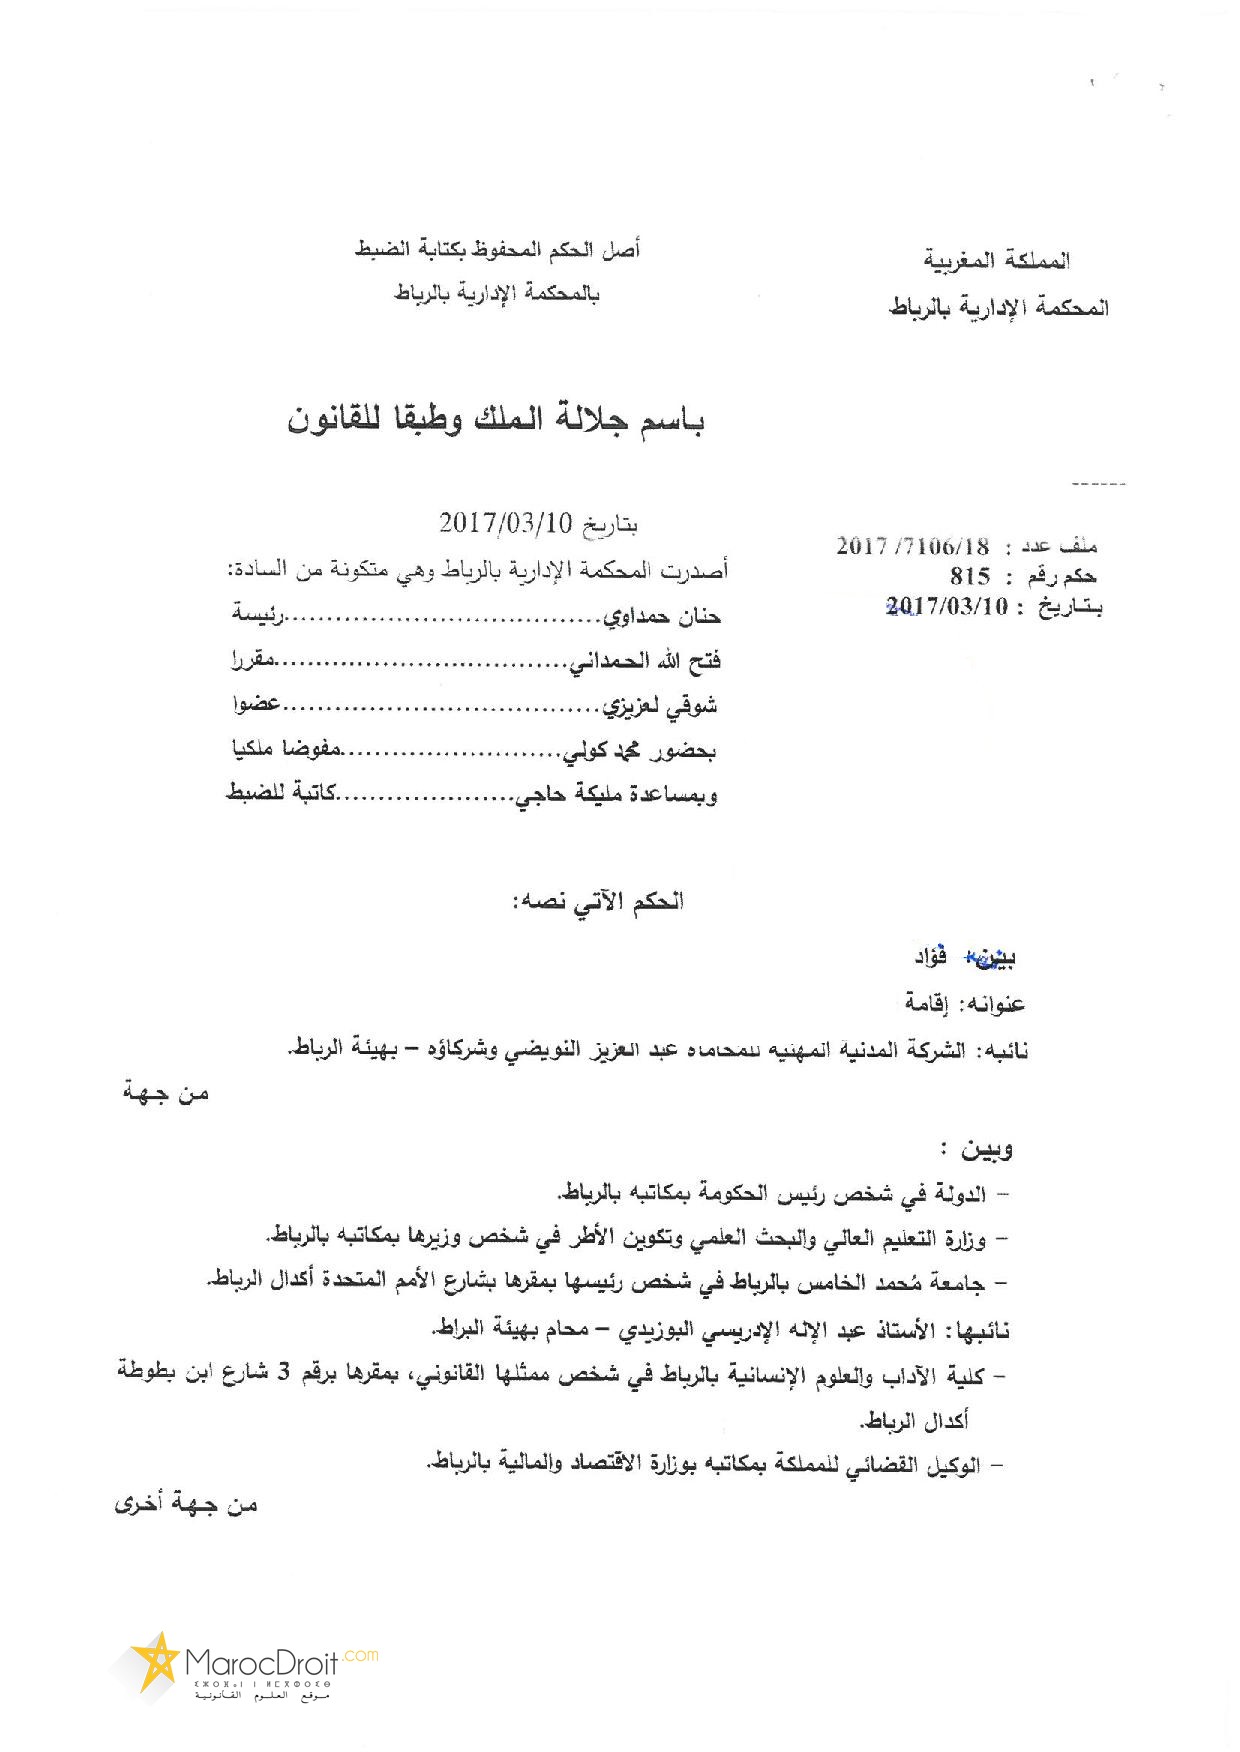 نسخة كاملة من الحكم القضائي القاضي بإيقاف تنفيذ قرار مجلس جامعة محمد الخامس القاضي بفرض رسوم التسجيل بسلك الدكتوراه في مواجهة الطلبة الم